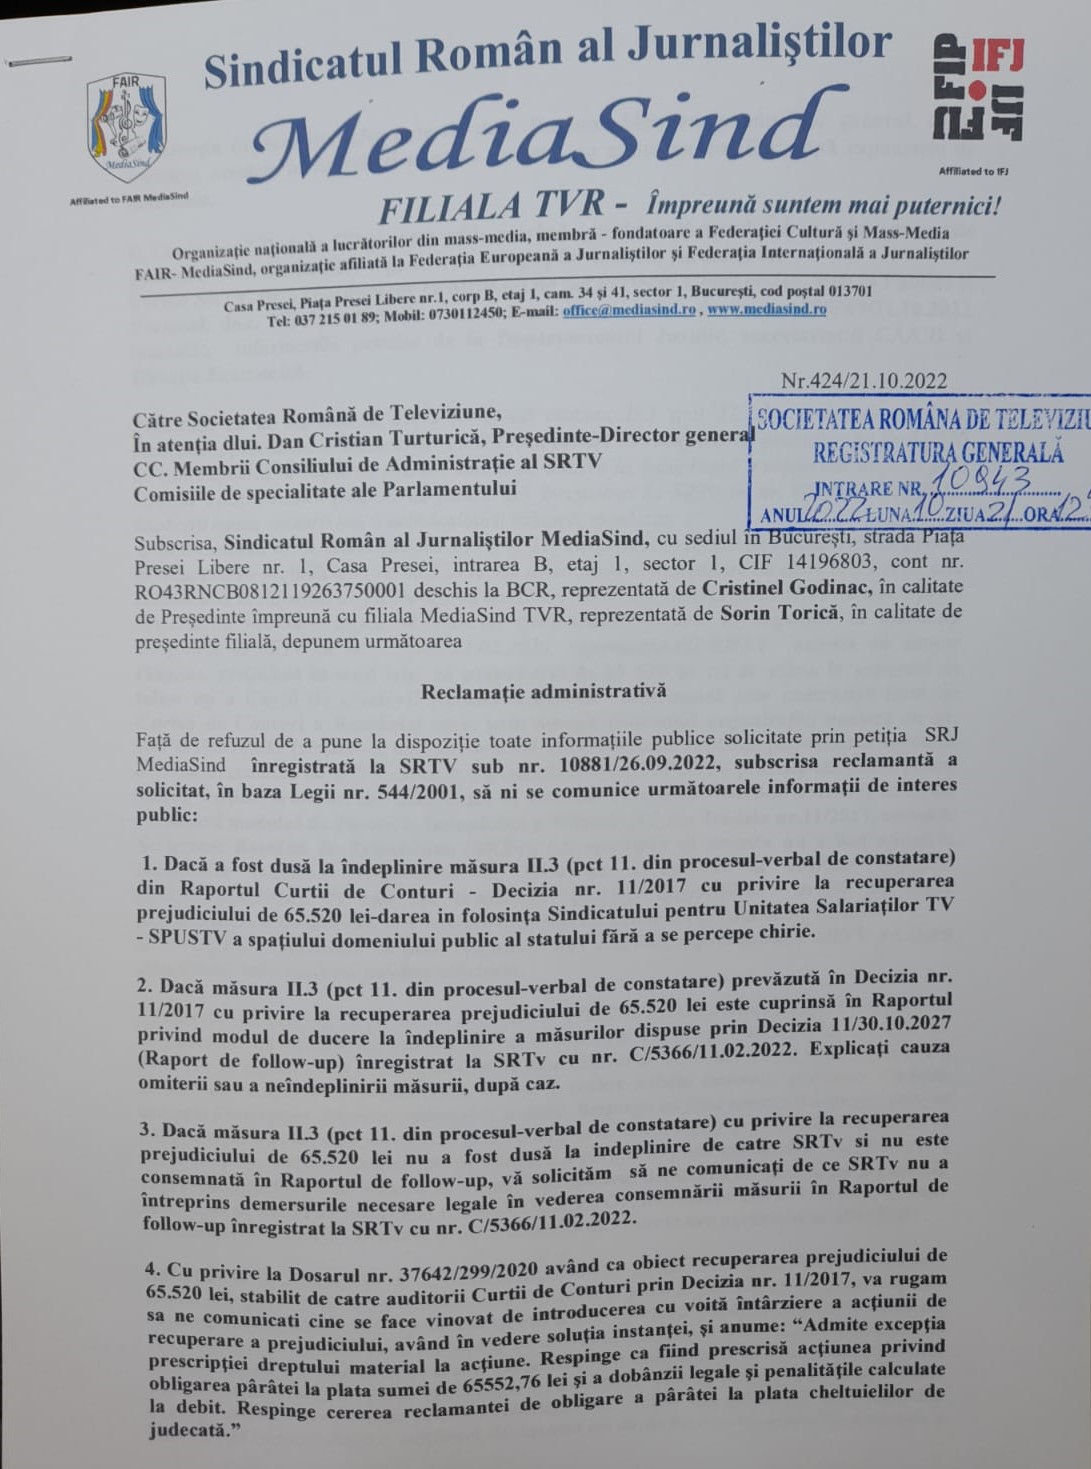 Ce ascunde TVR? Sindicatul Român al Jurnaliștilor MediaSind TVR a acționat în justiție TVR, fiindcă refuză să dea informații publice, privind facilitățile acordate liderilor sindicatului de casă!